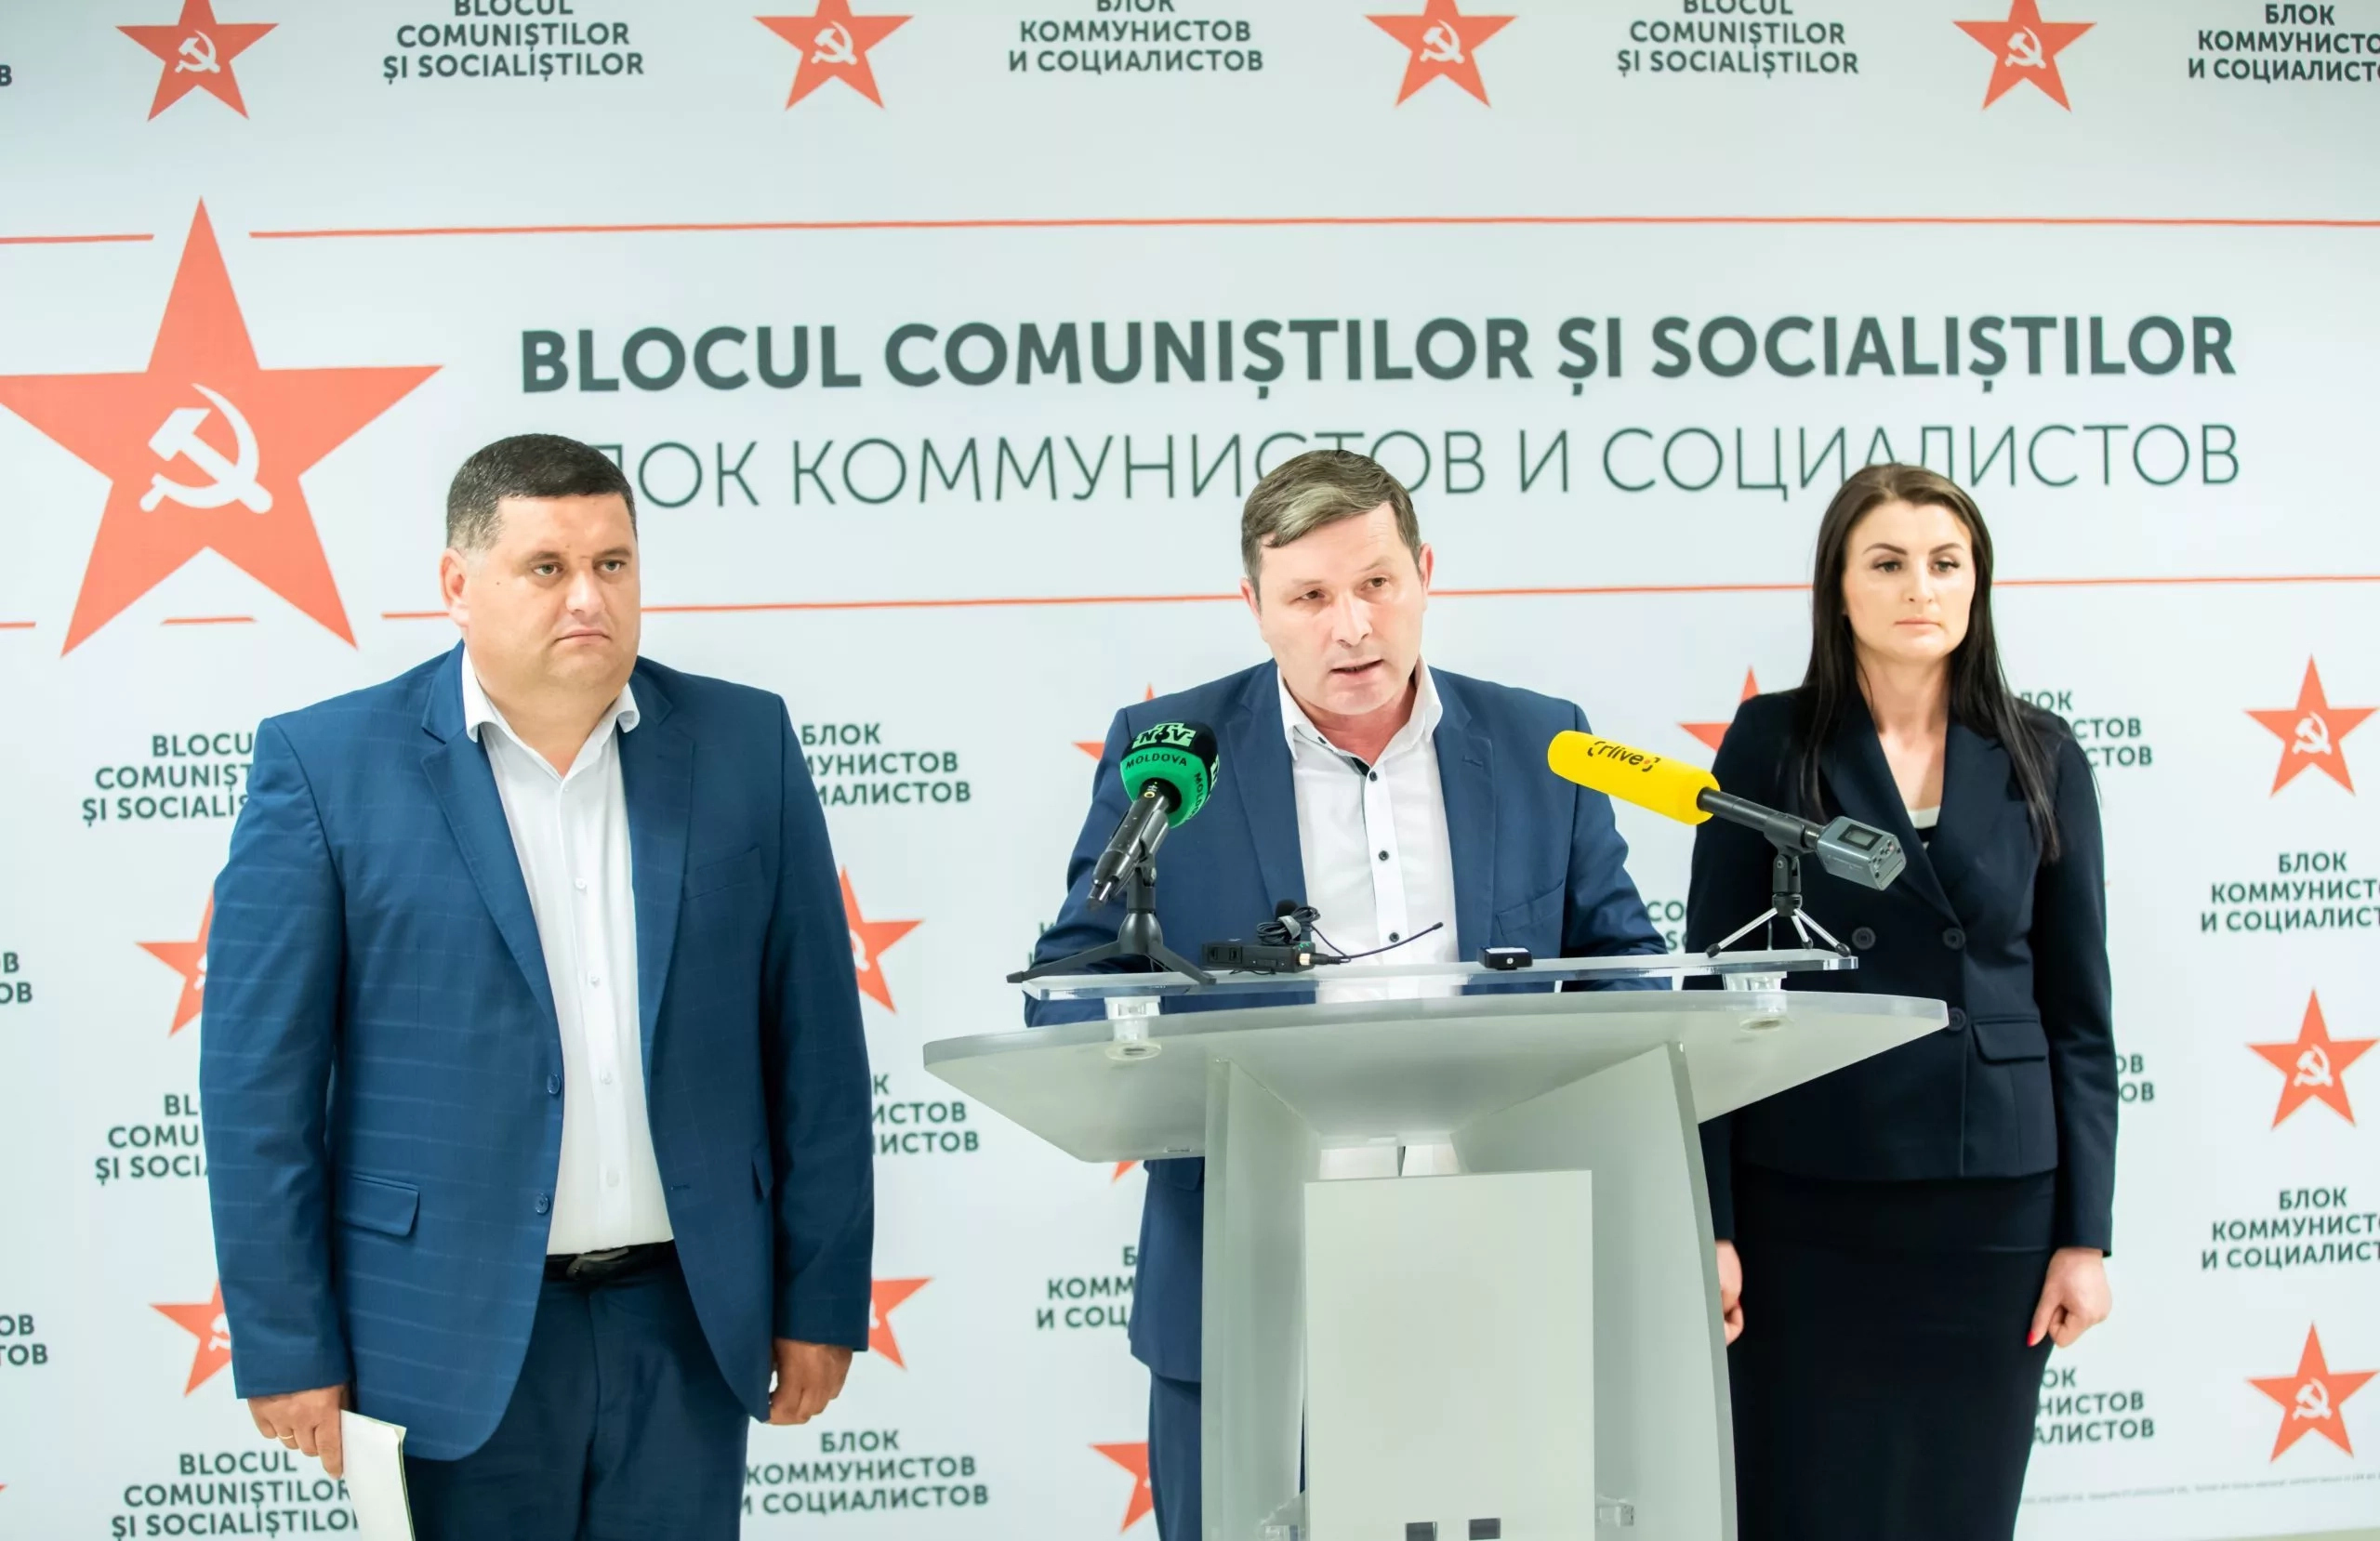 Blocul Comuniștilor și Socialiștilor relansează Programul Național “Satul Moldovenesc”